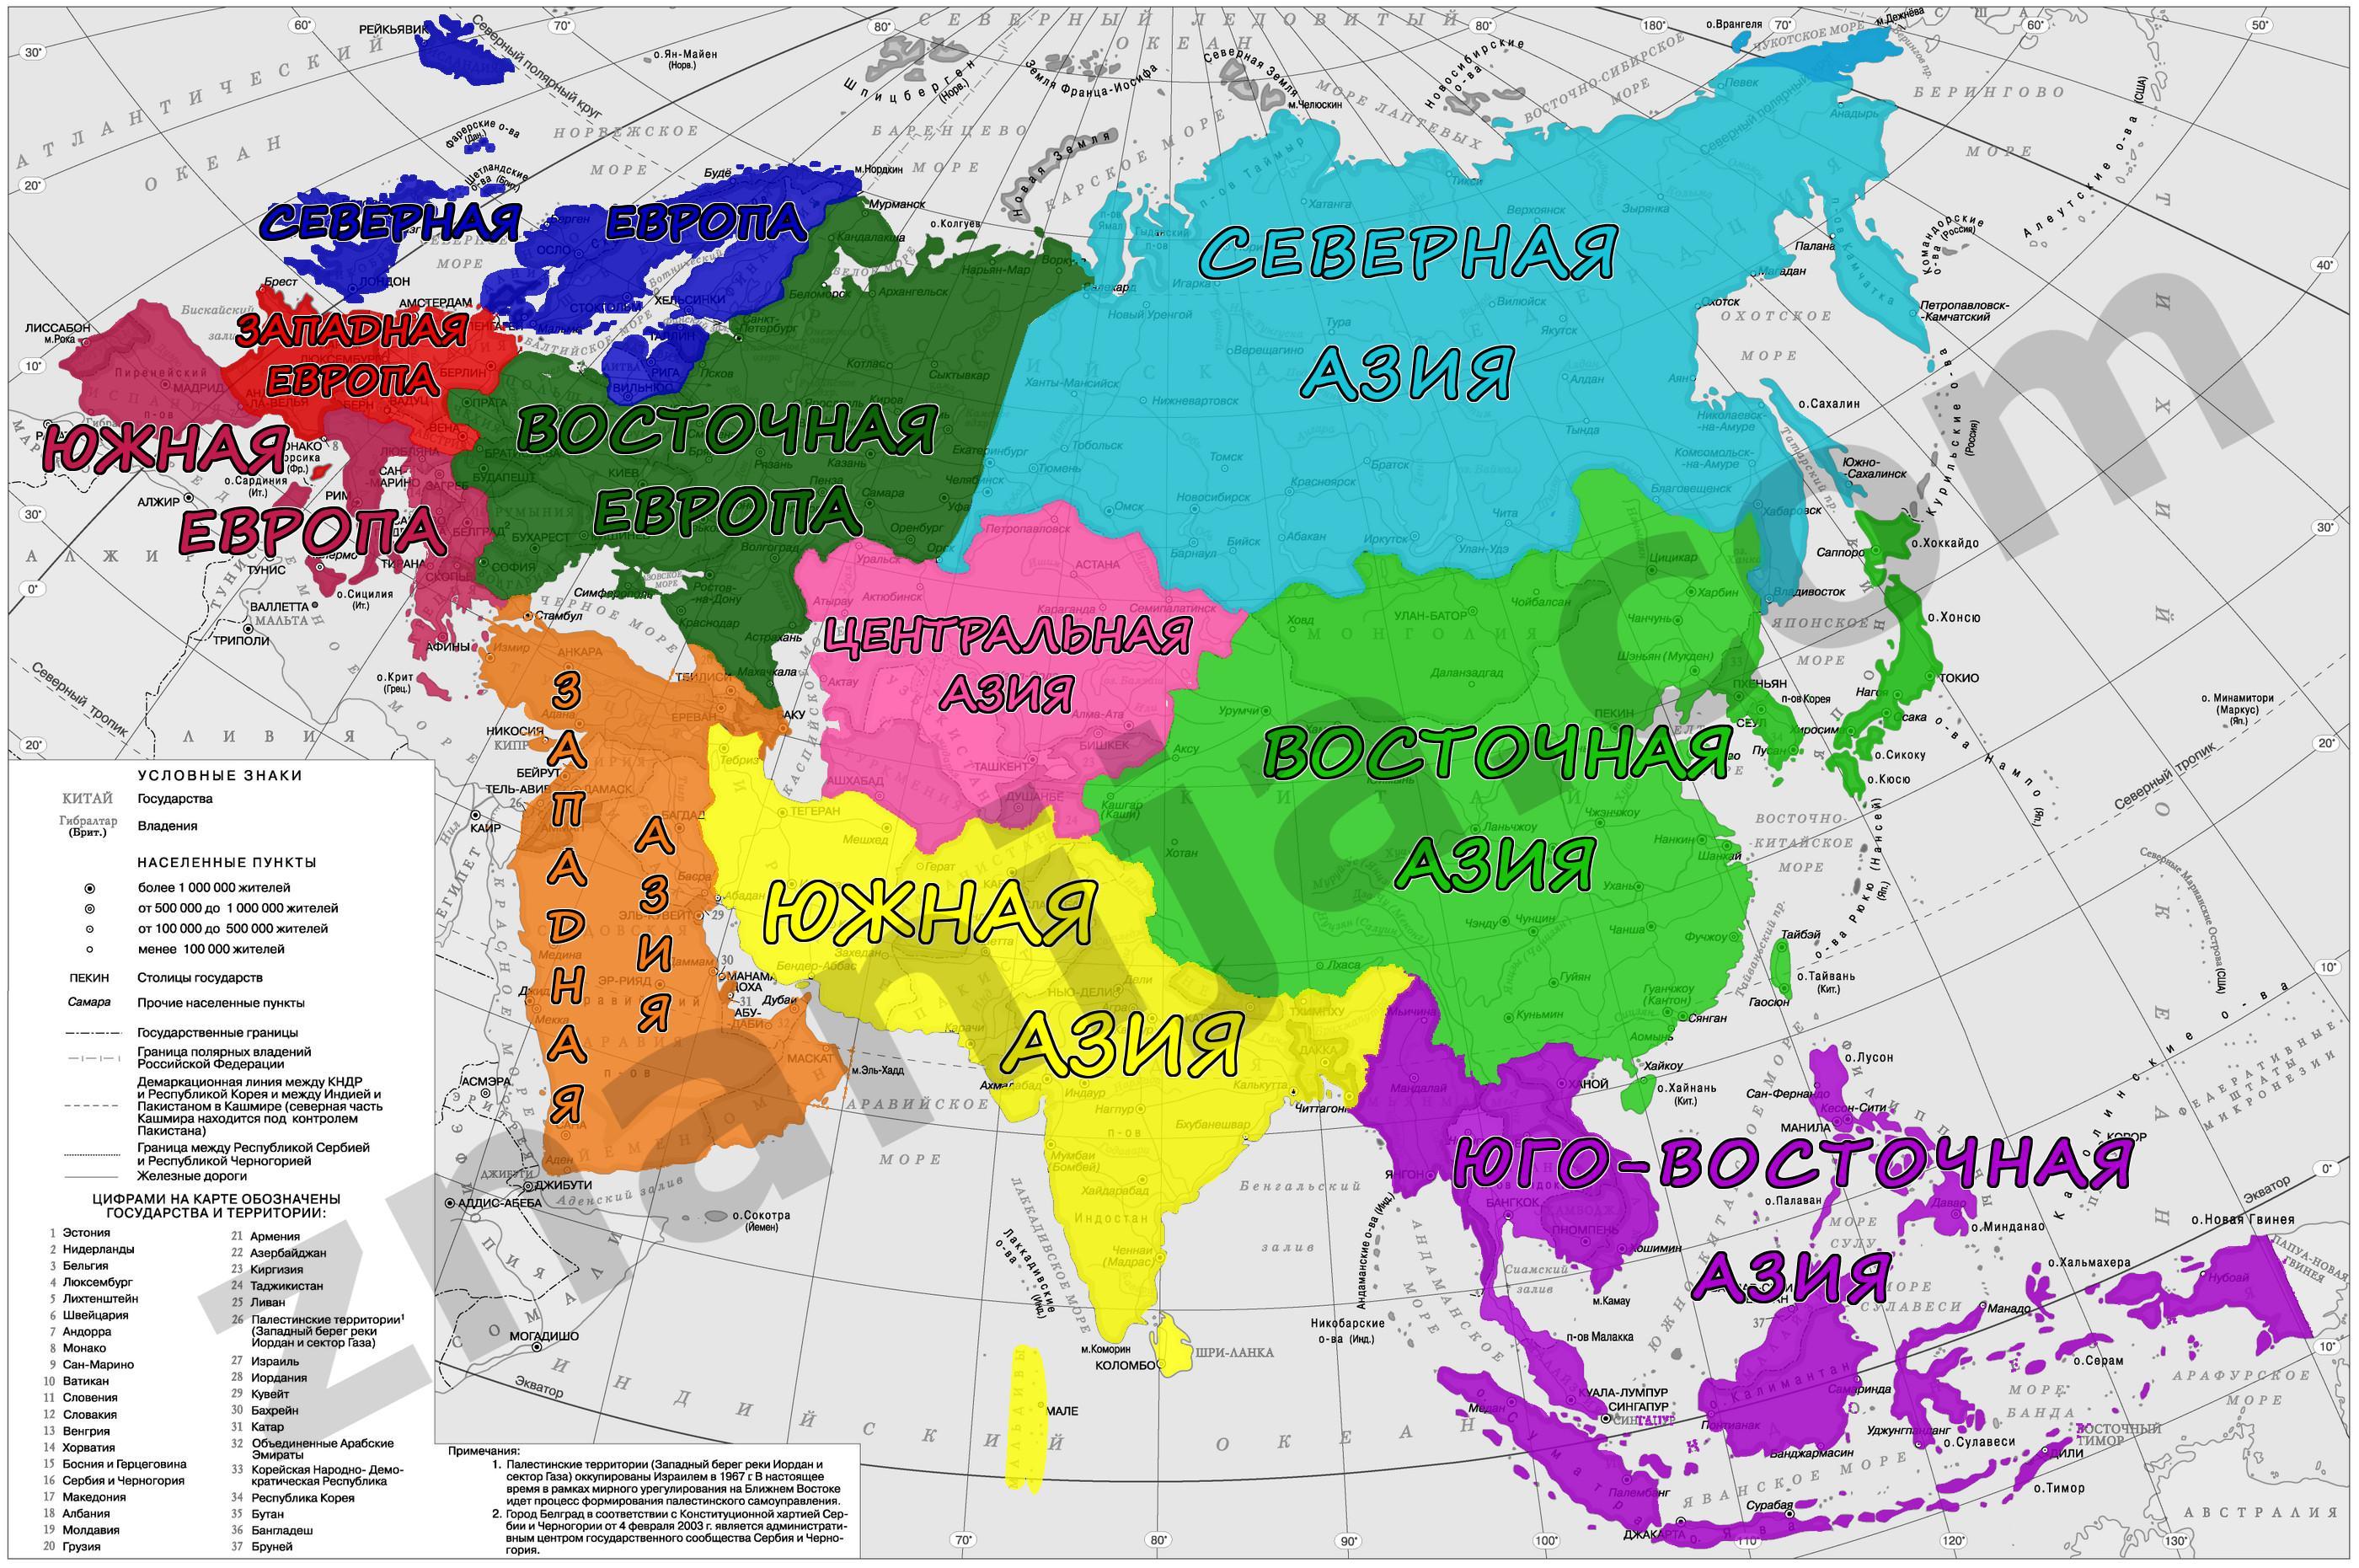 Asia region. Материк Евразия на карте Европа и Азия. Политическая карта Евразии. Карта Евразии с границами государств. Южная Северная Восточная Западная Азия на карте.